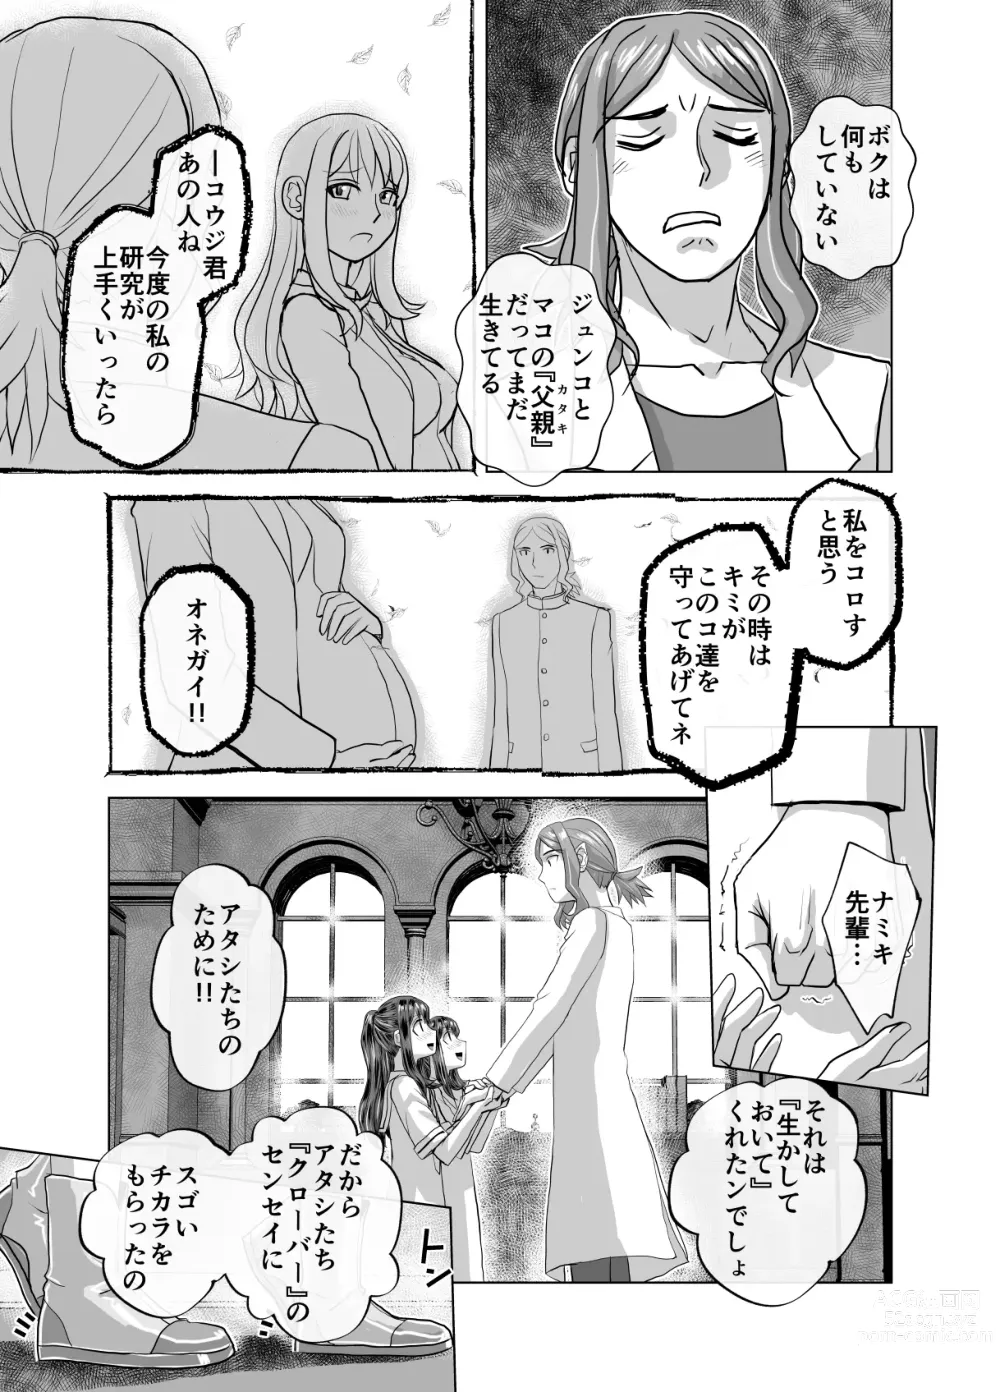 Page 601 of doujinshi BEYOND ~ Aisubeki Kanata no Hitobito 1~10